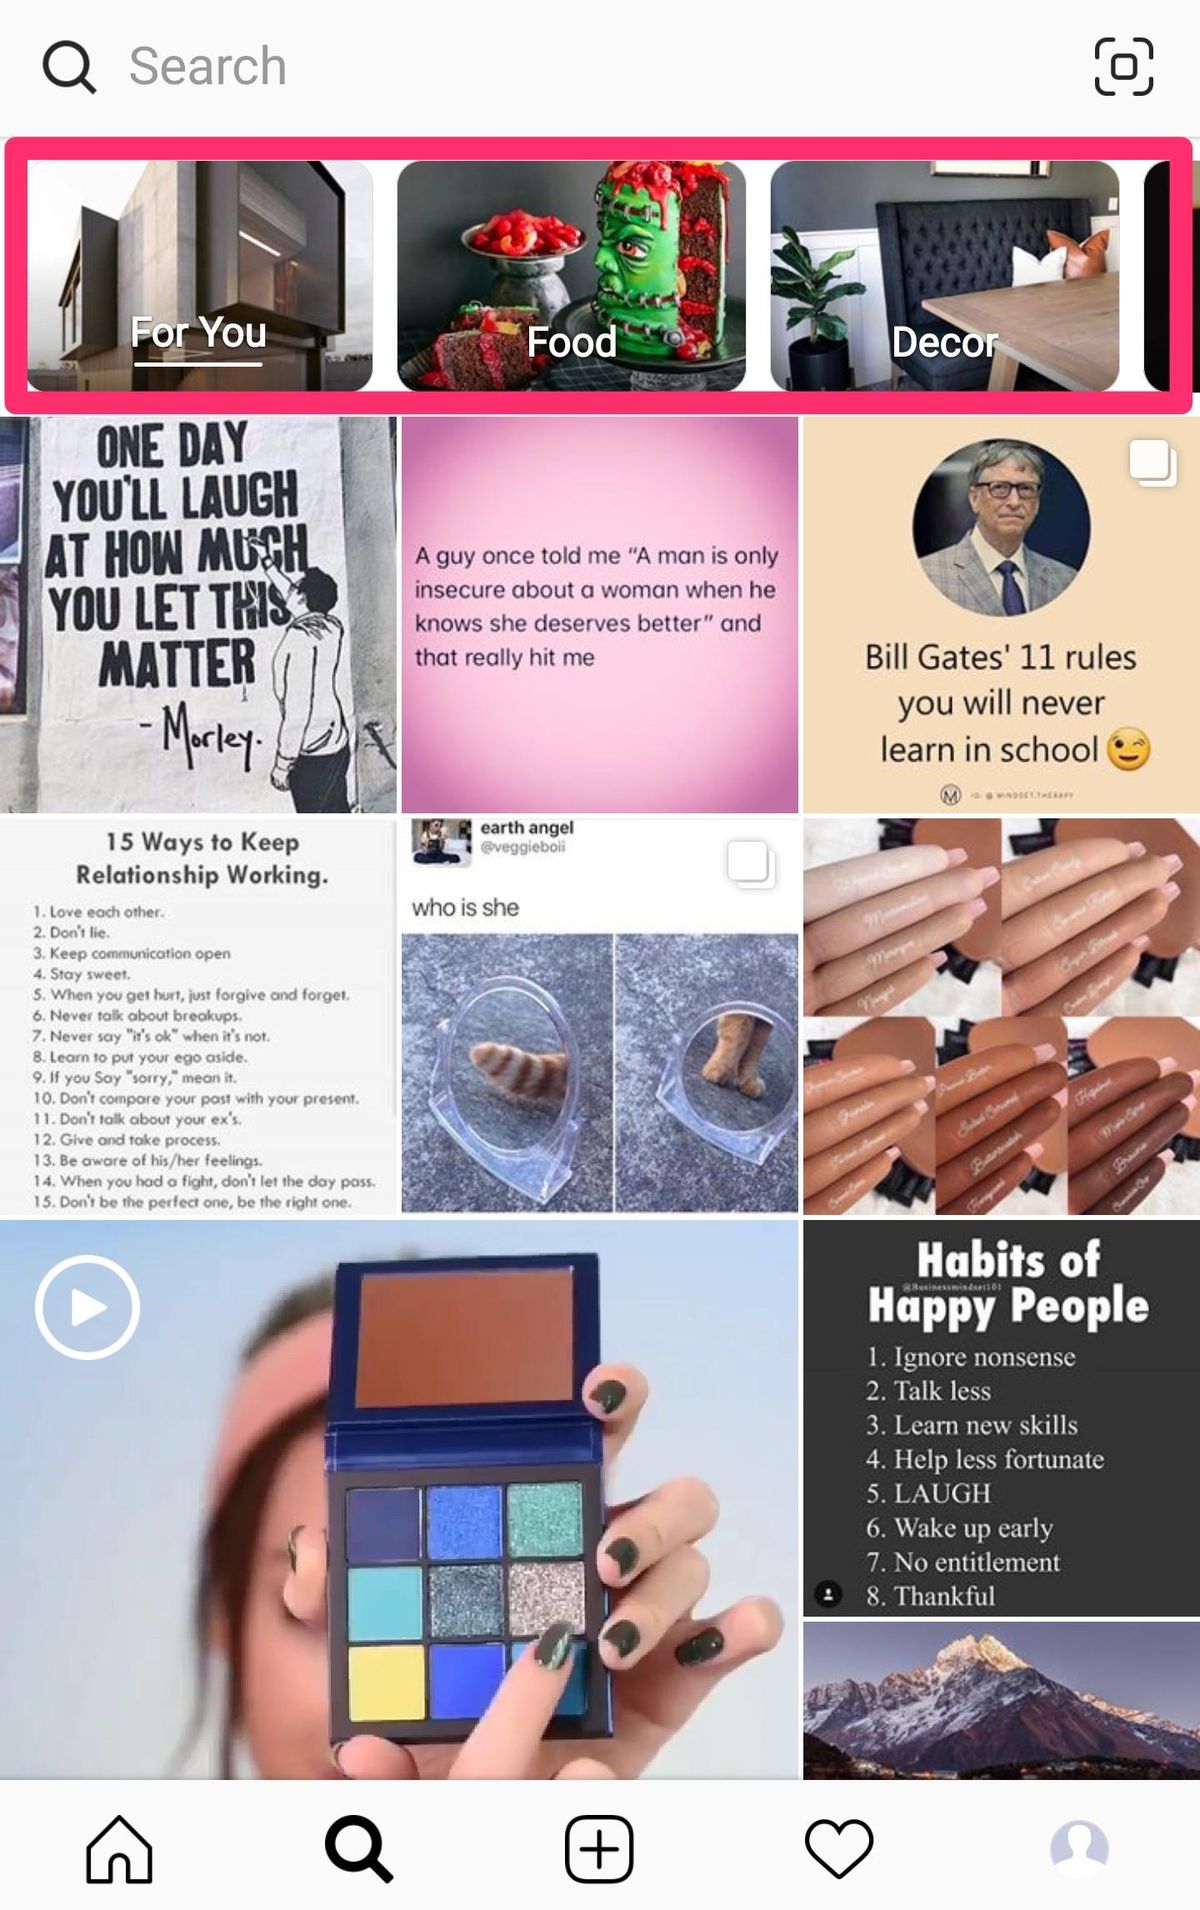 Instagram explora categories